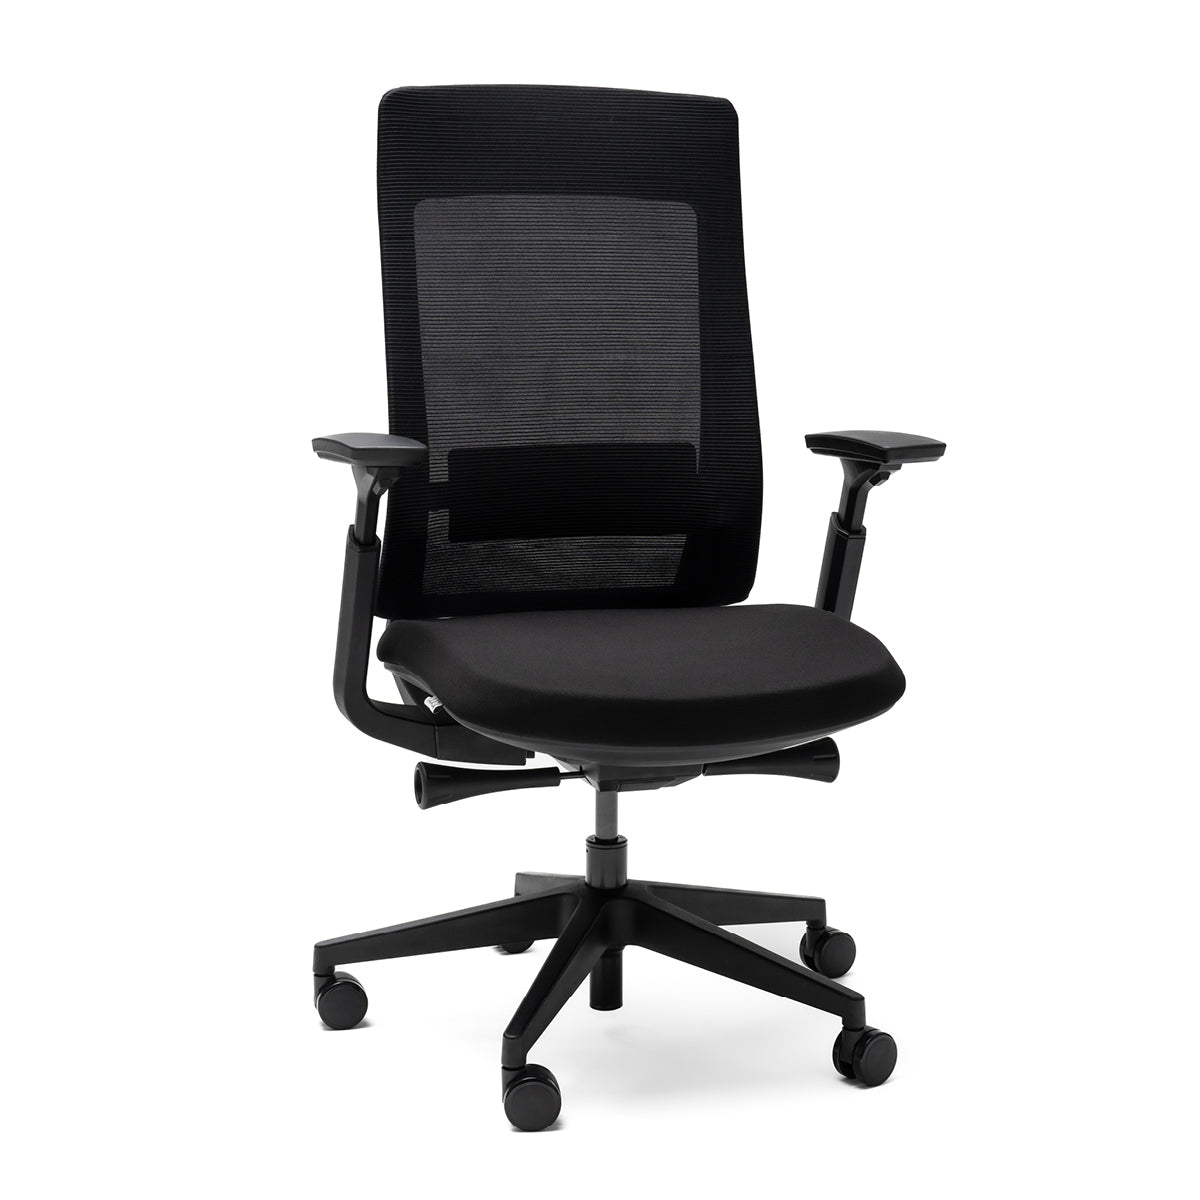 mya black è la sedia per uffcio ideale da inserire nella propria casa.